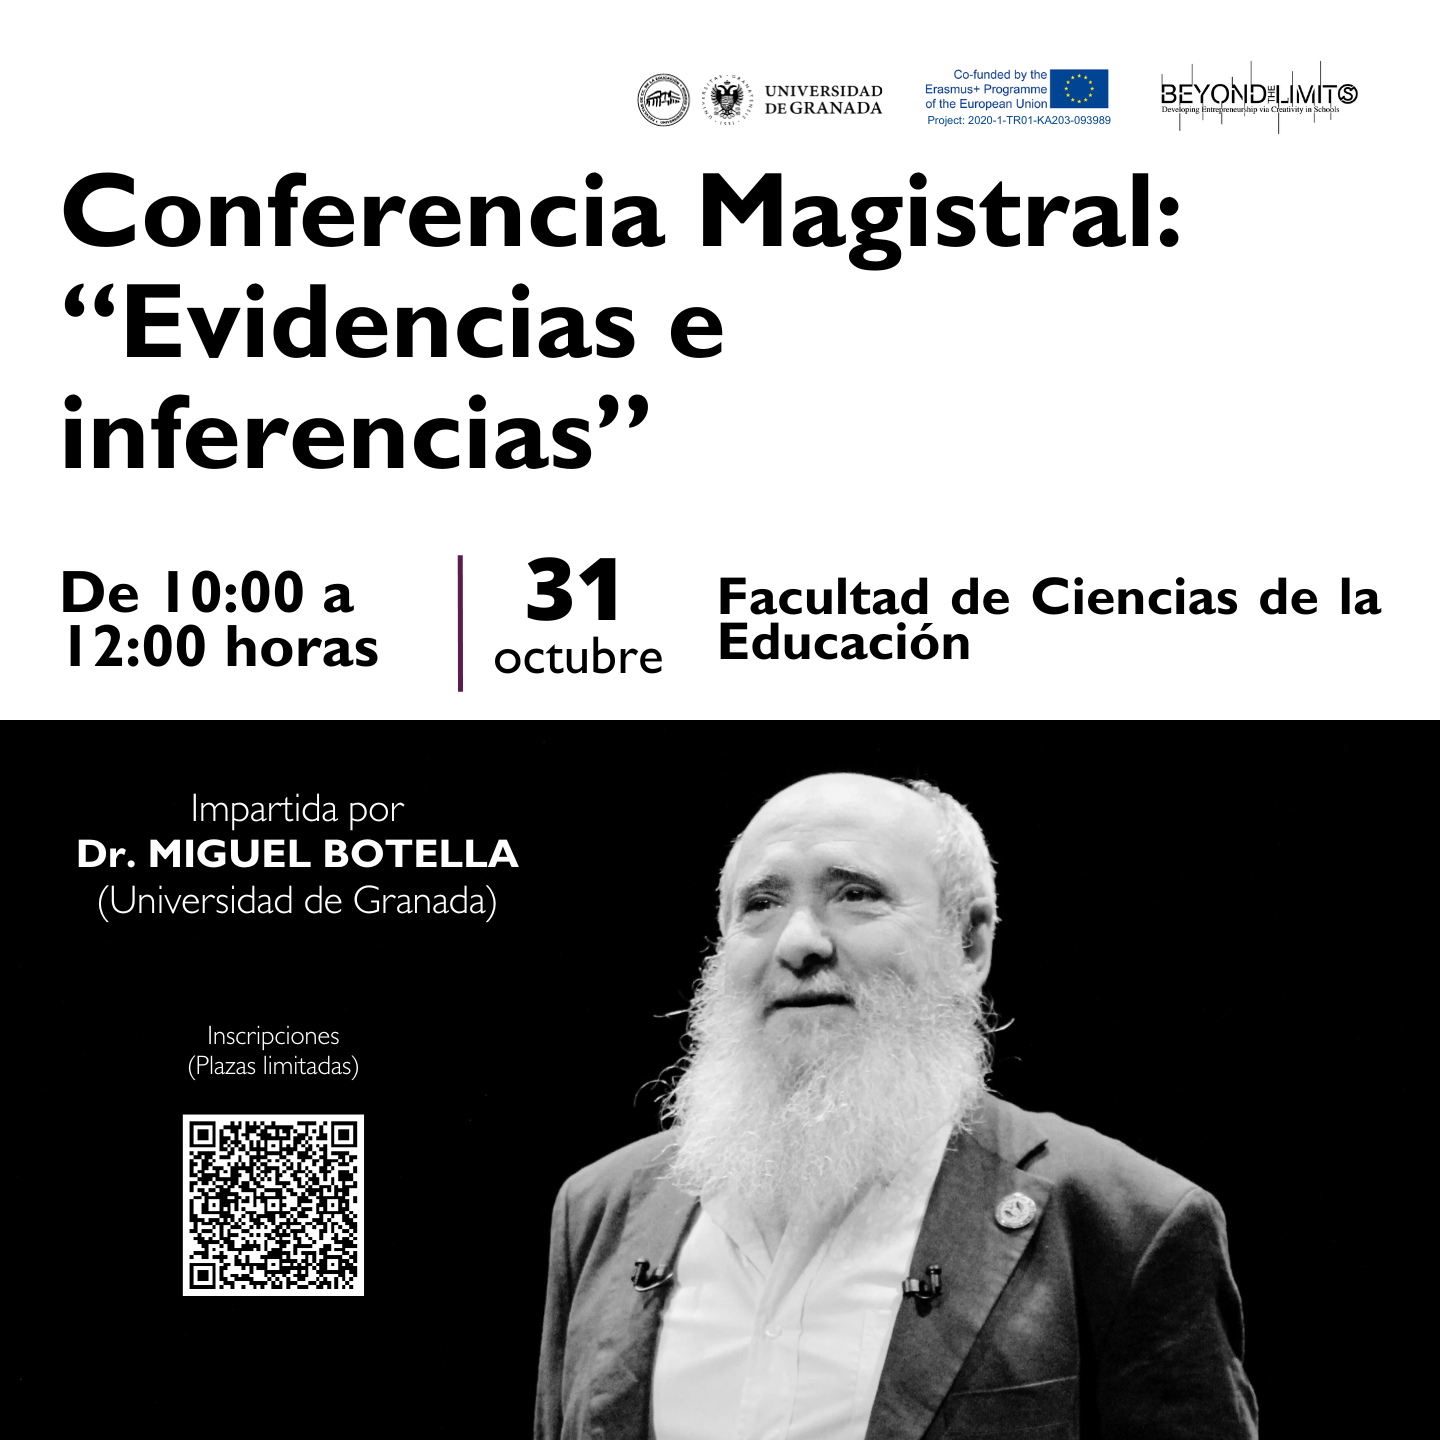 Cartel de la conferencia con imagen del Dr. Miguel Botella